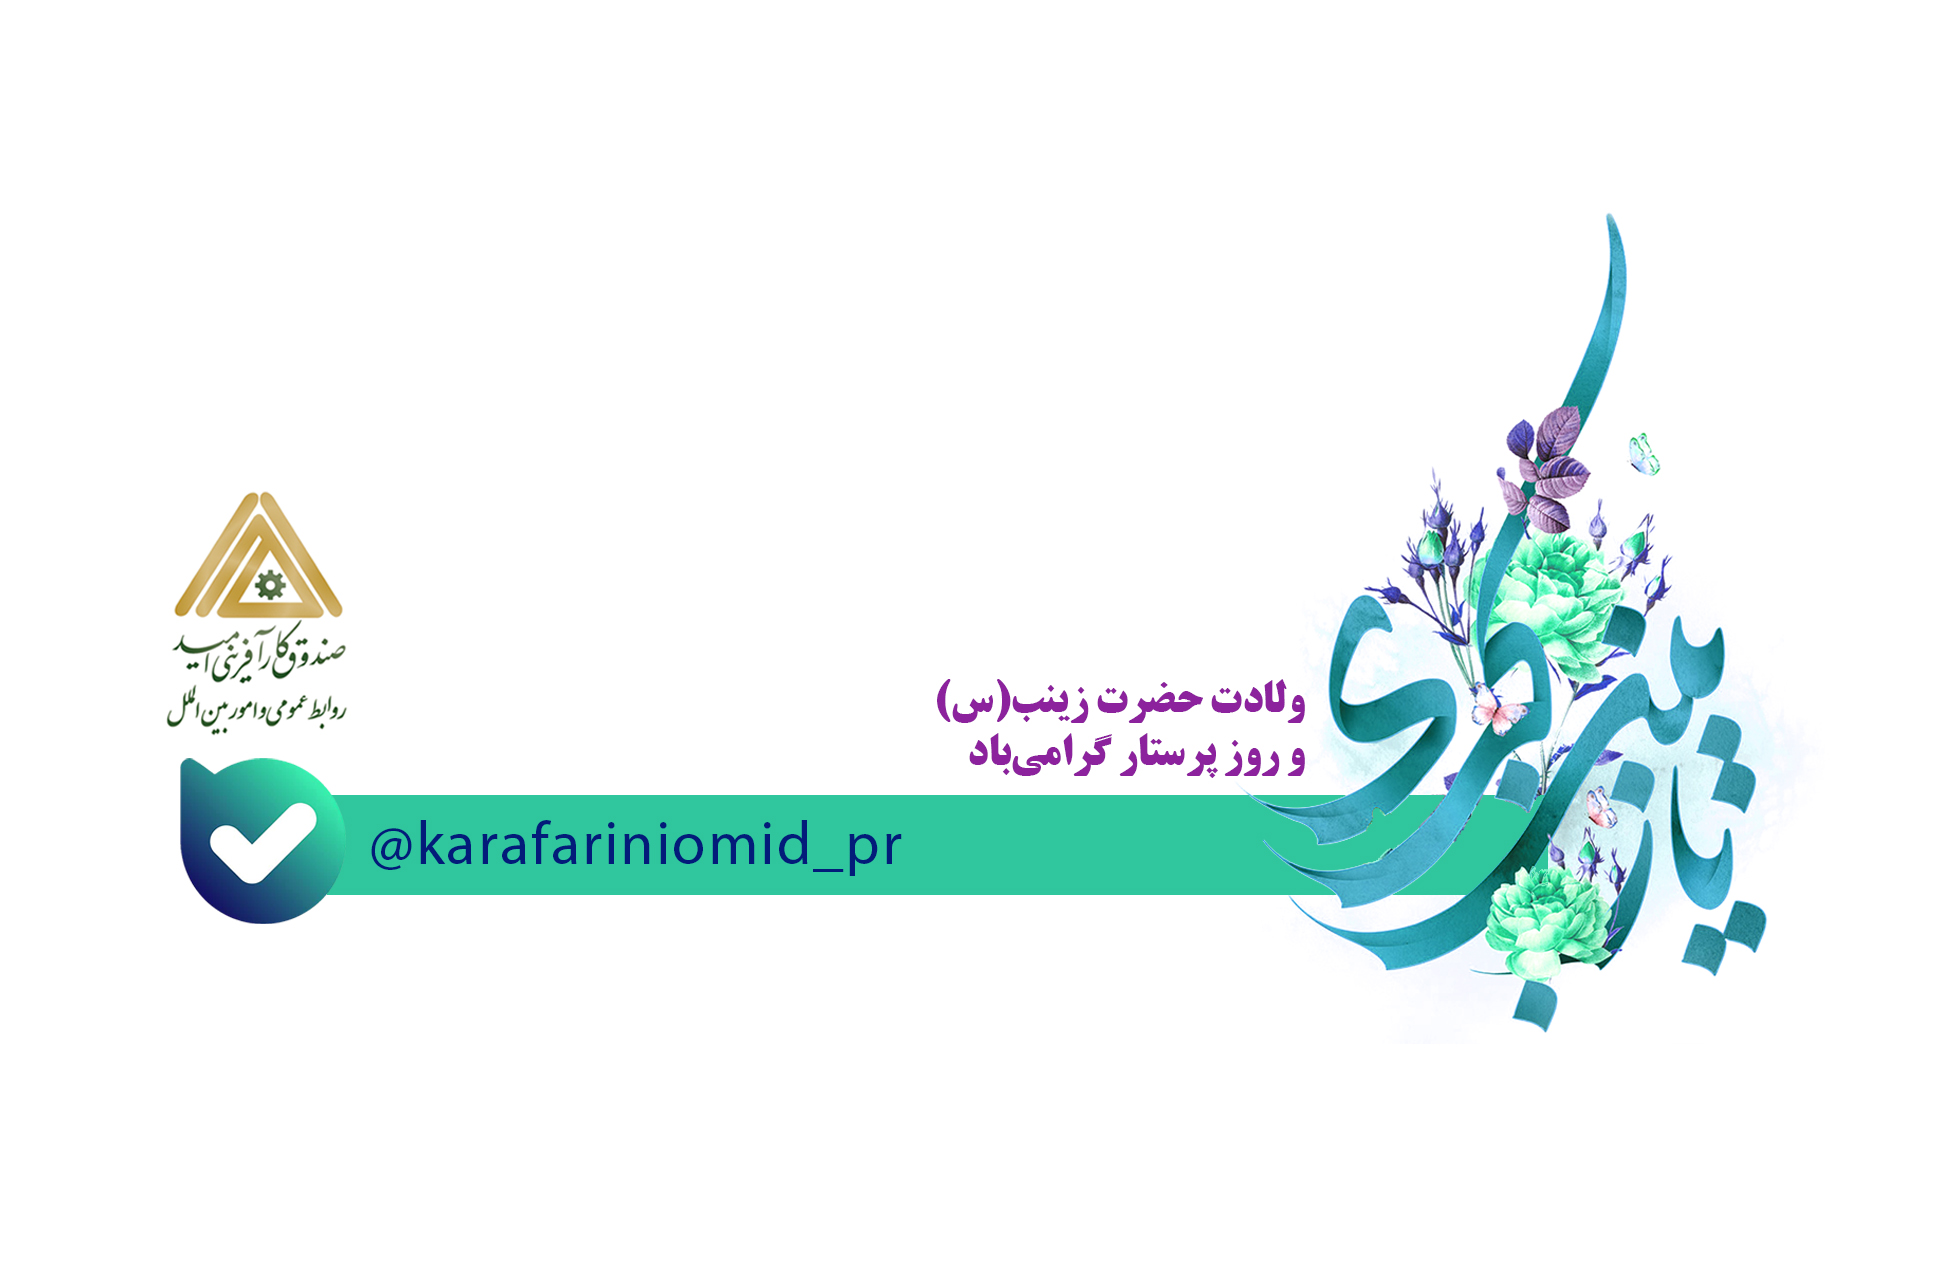 راه اندازی کانال جدید اطلاع رسانی اخبار صندوق کارآفرینی امید در فضای مجازی